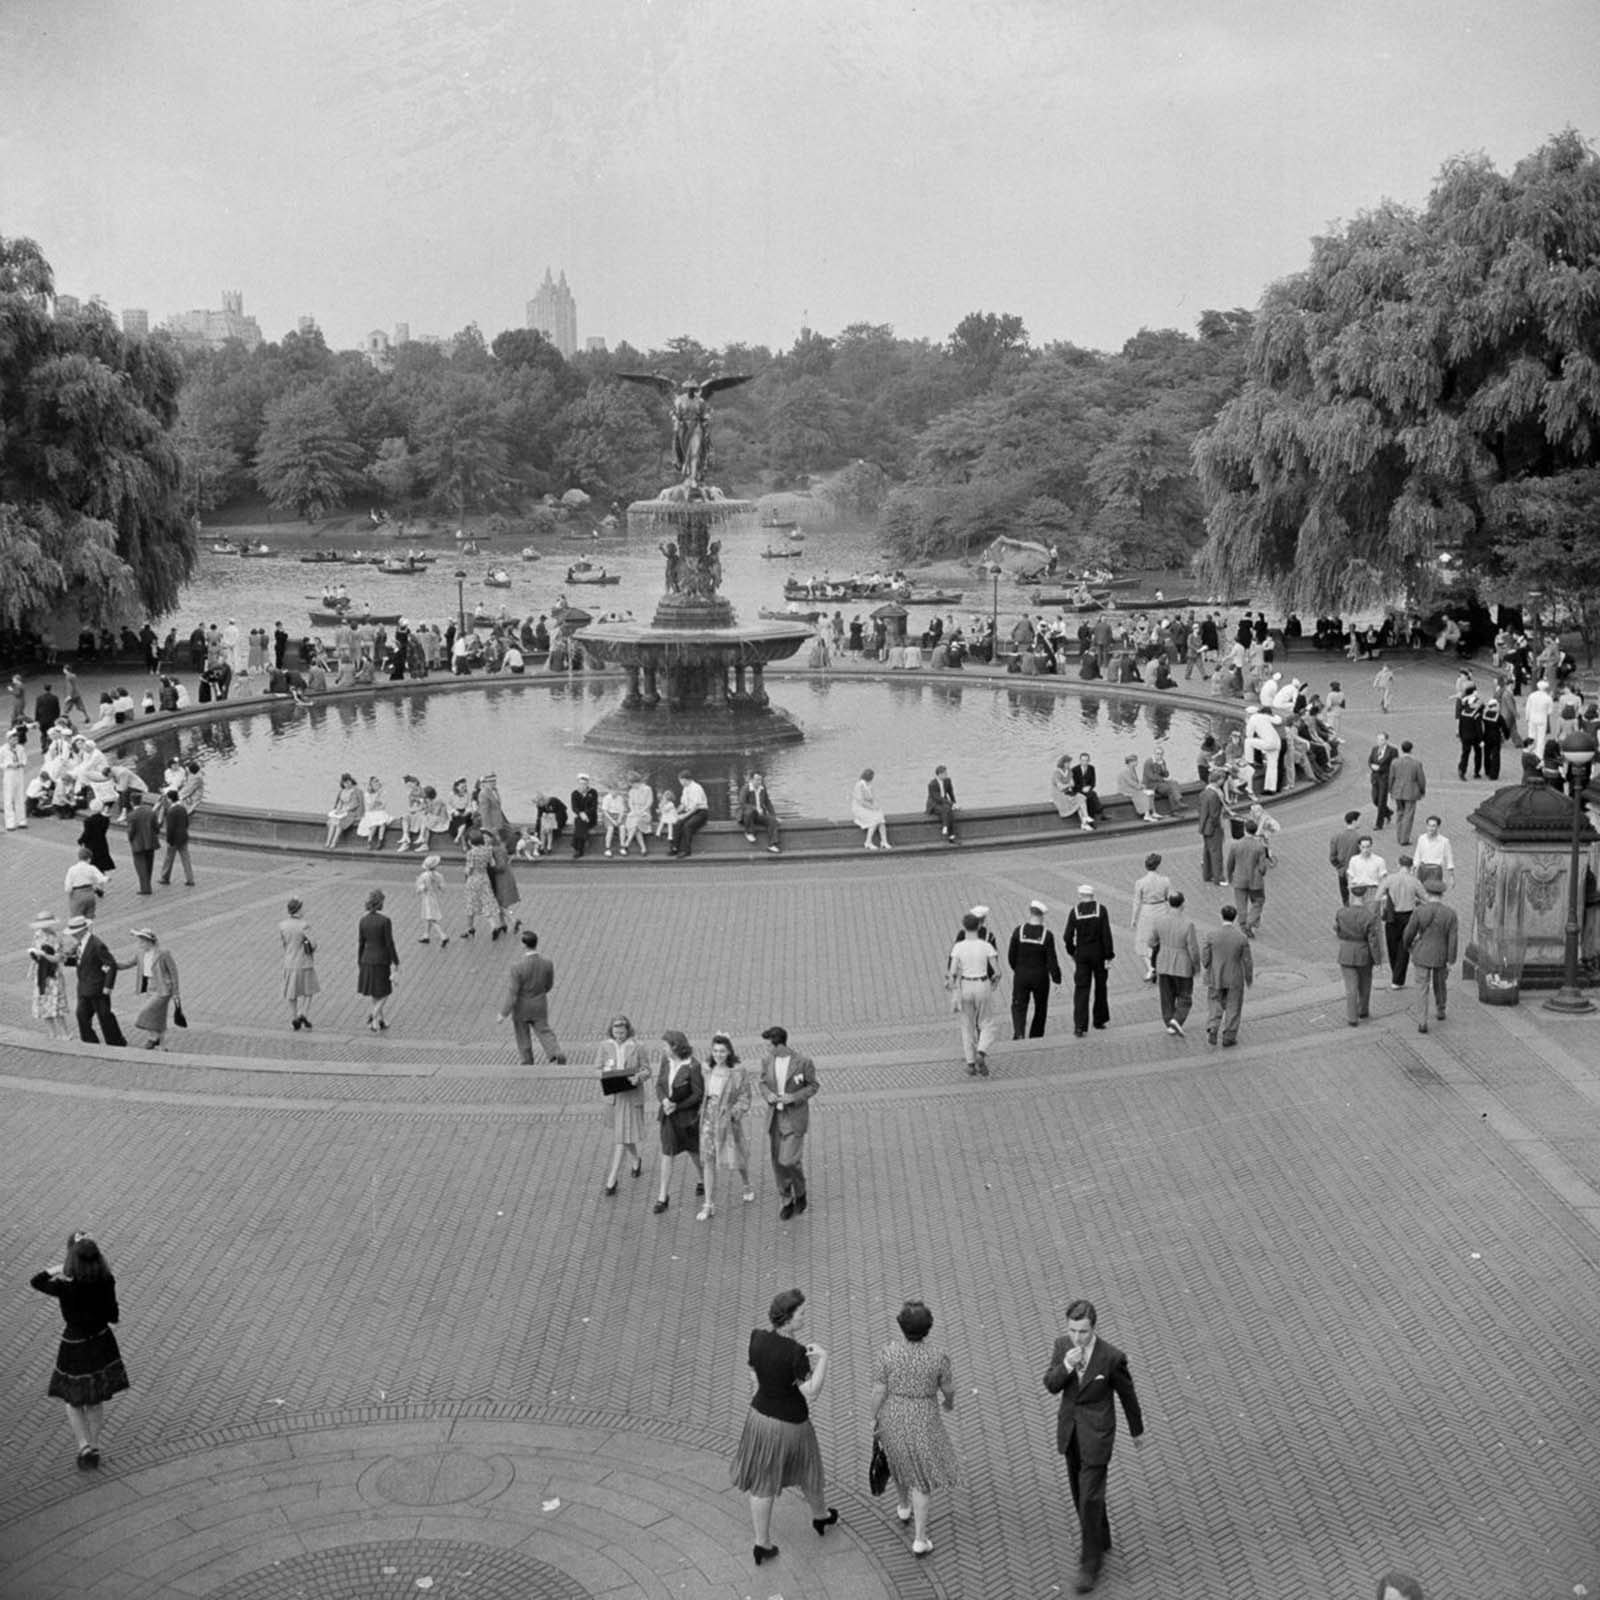 Photographies oubliées d'un dimanche de fin d'été à Central Park, 1942